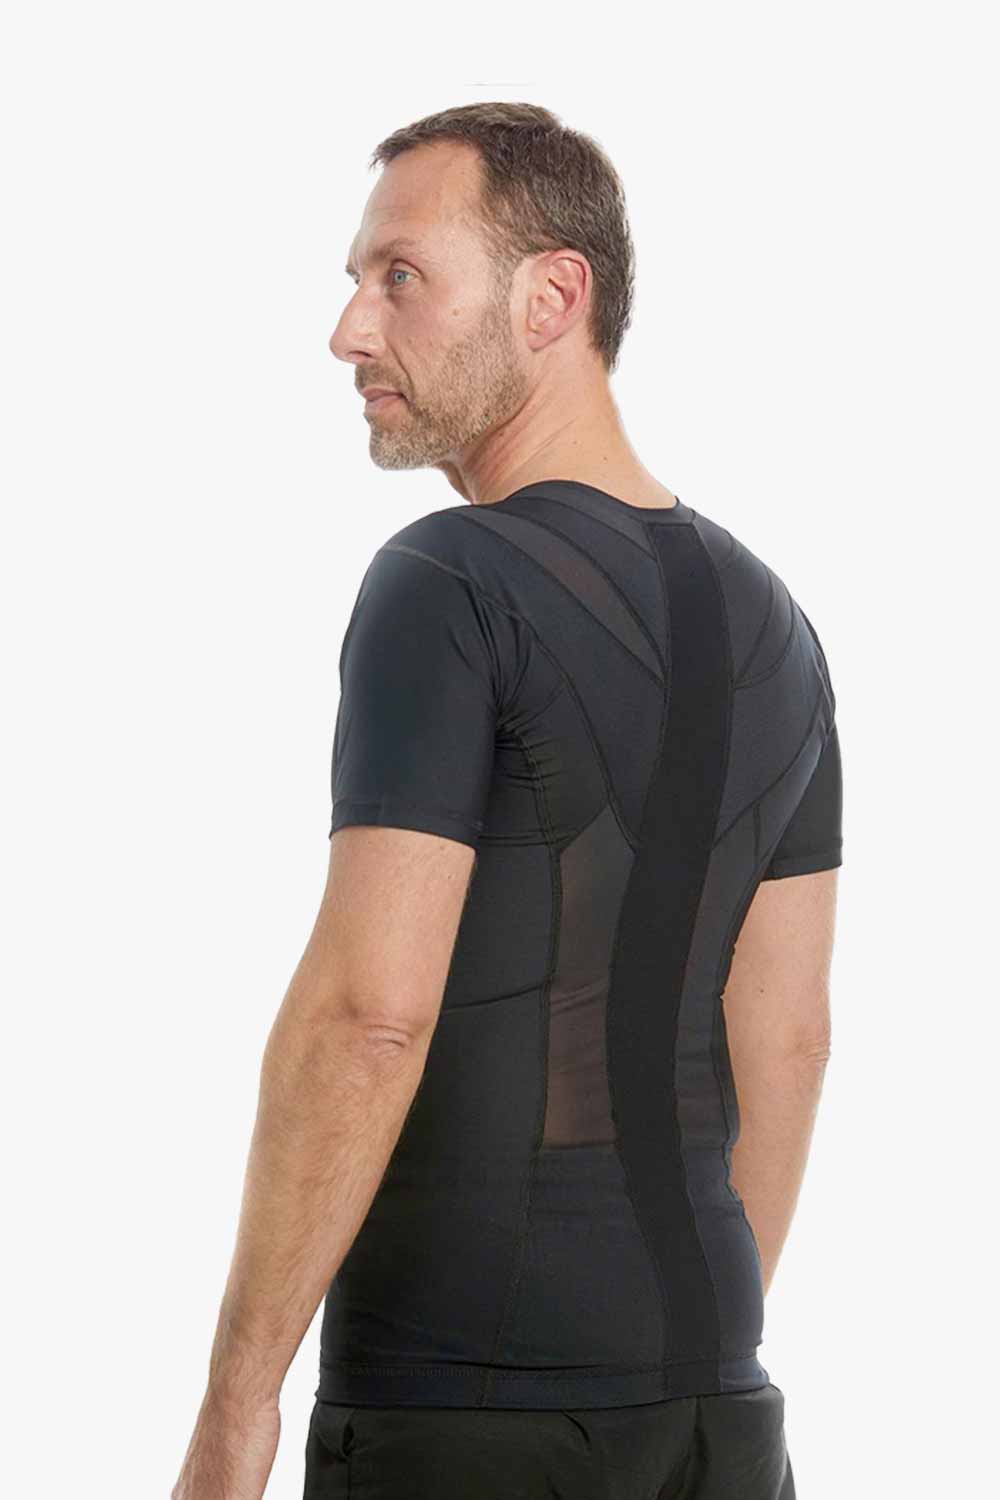 DEMO - Men's Posture Shirt™ Zipper - Zwart